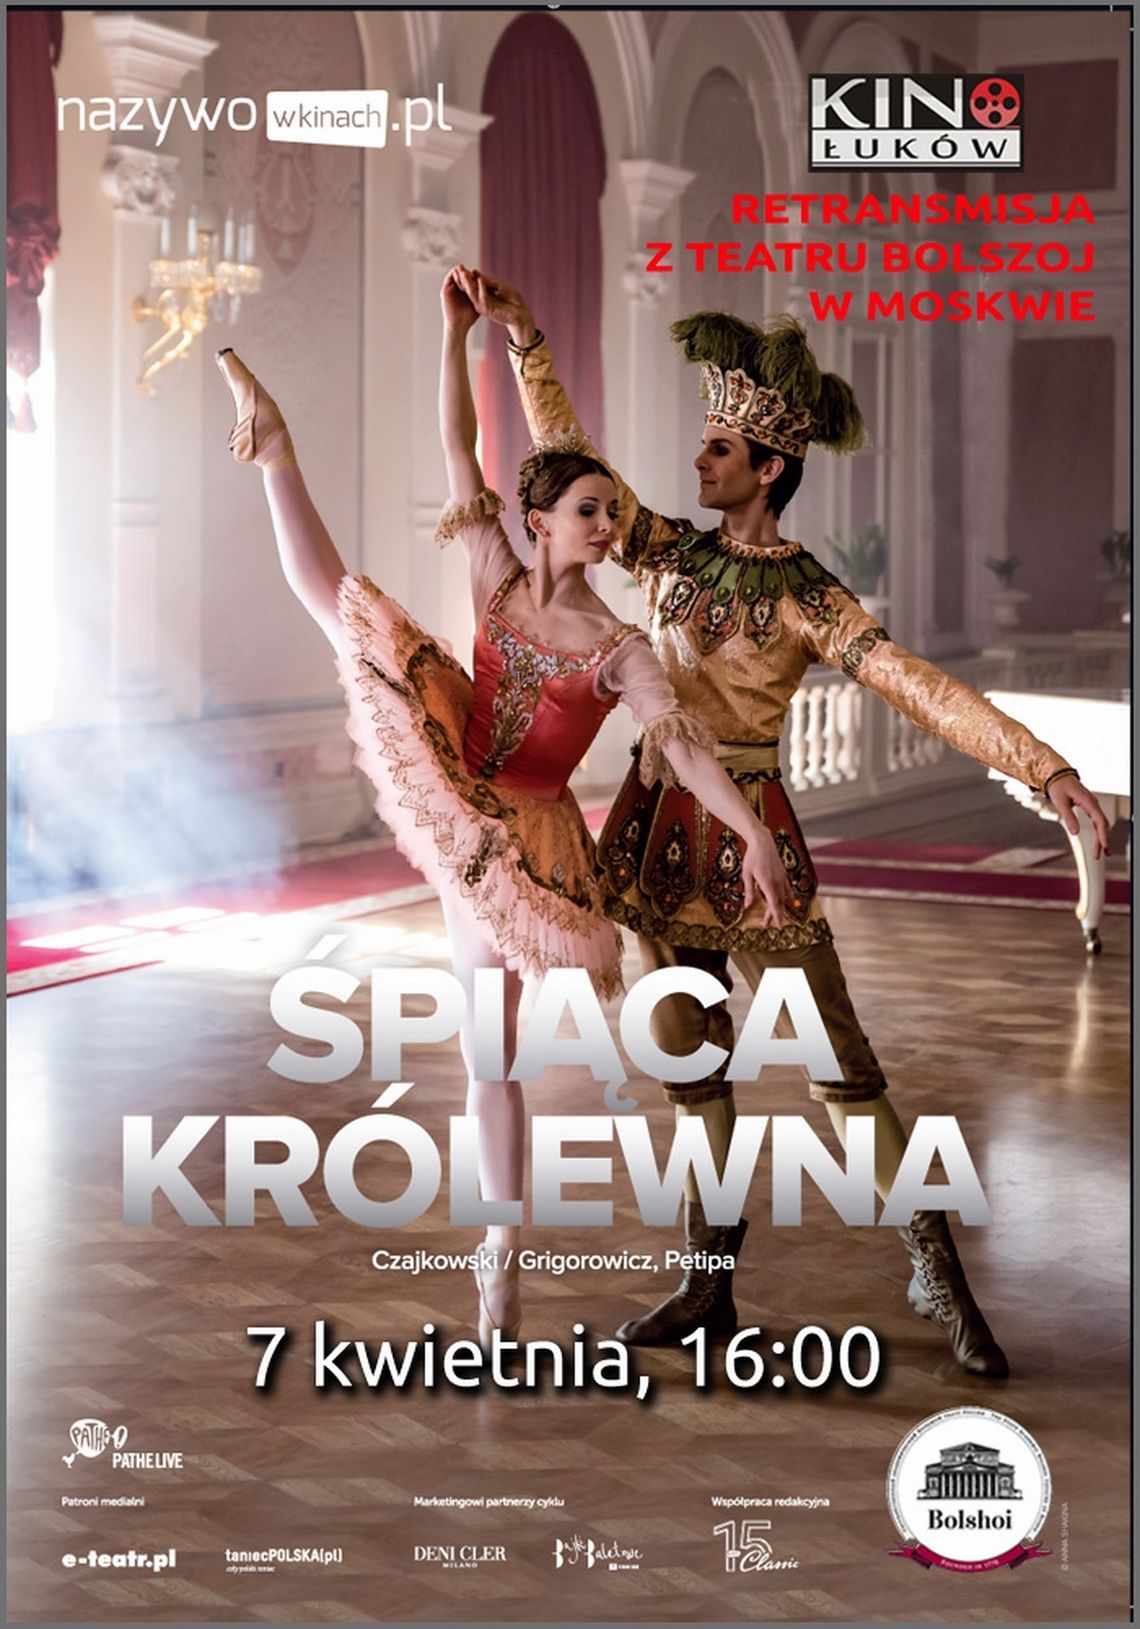 Retransmisja spektaklu baletowego z Teatru Bolszoj "Śpiąca Królewna" /7 kwietnia 2019